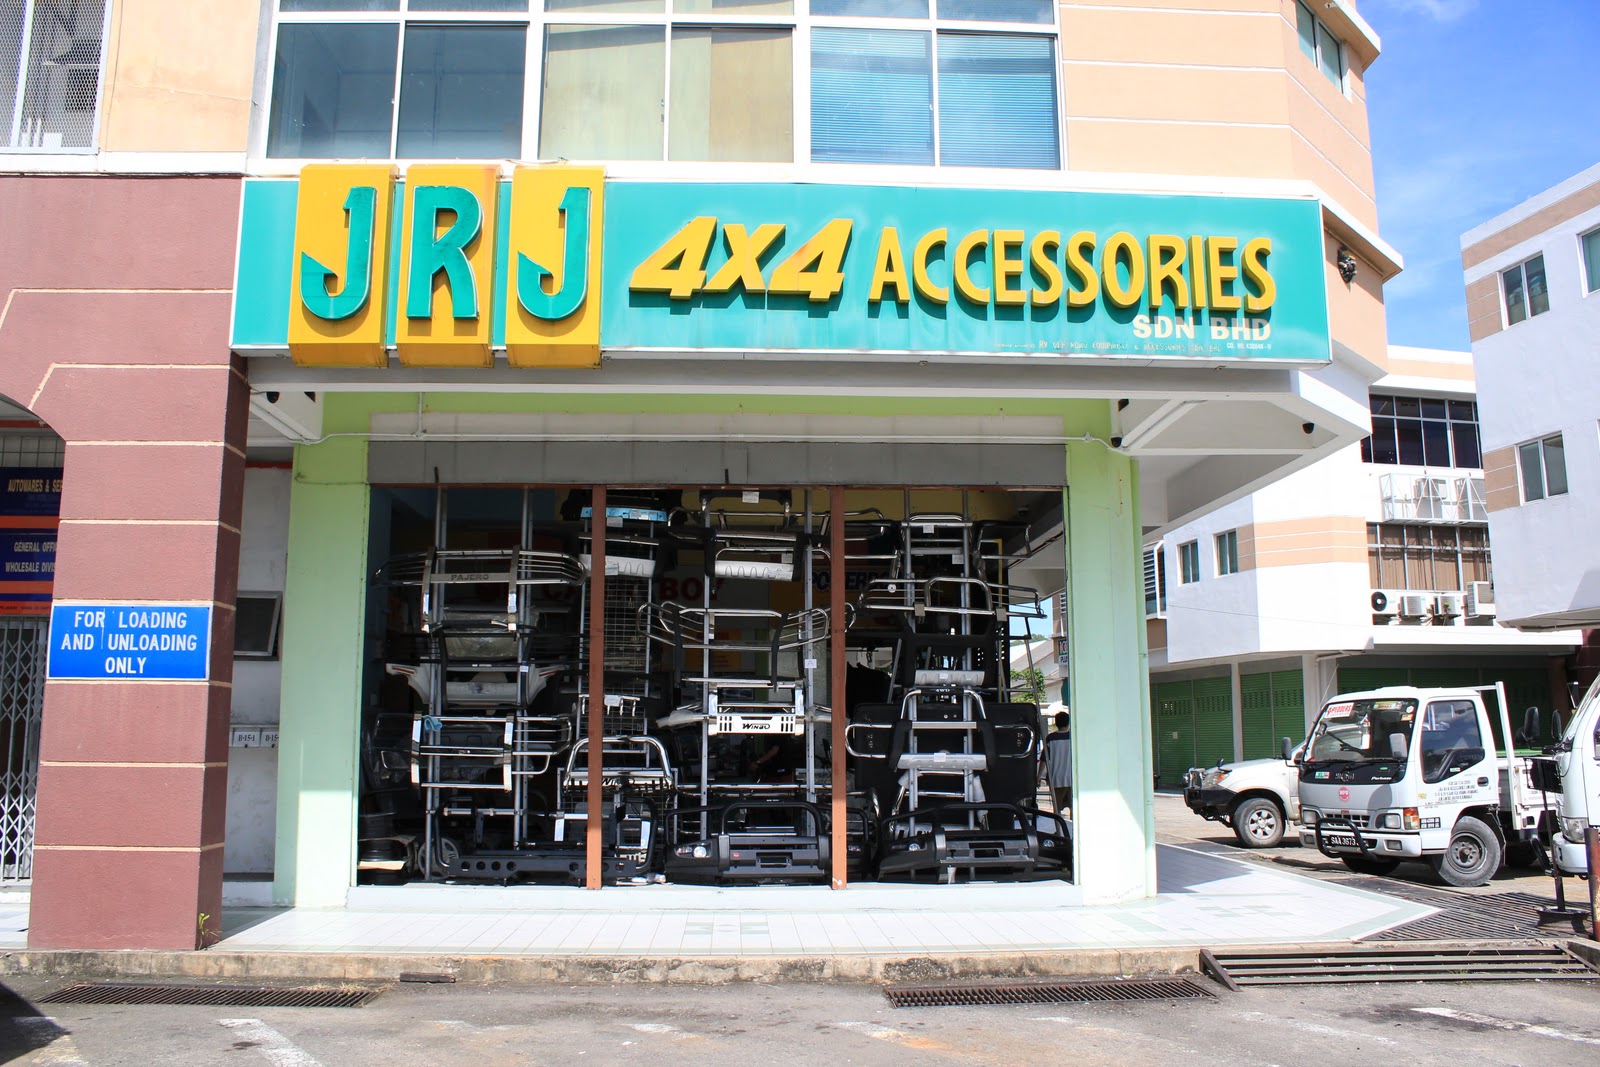 JRJ 4x4 ACCESSORIES SDN.BHD.: SHOP